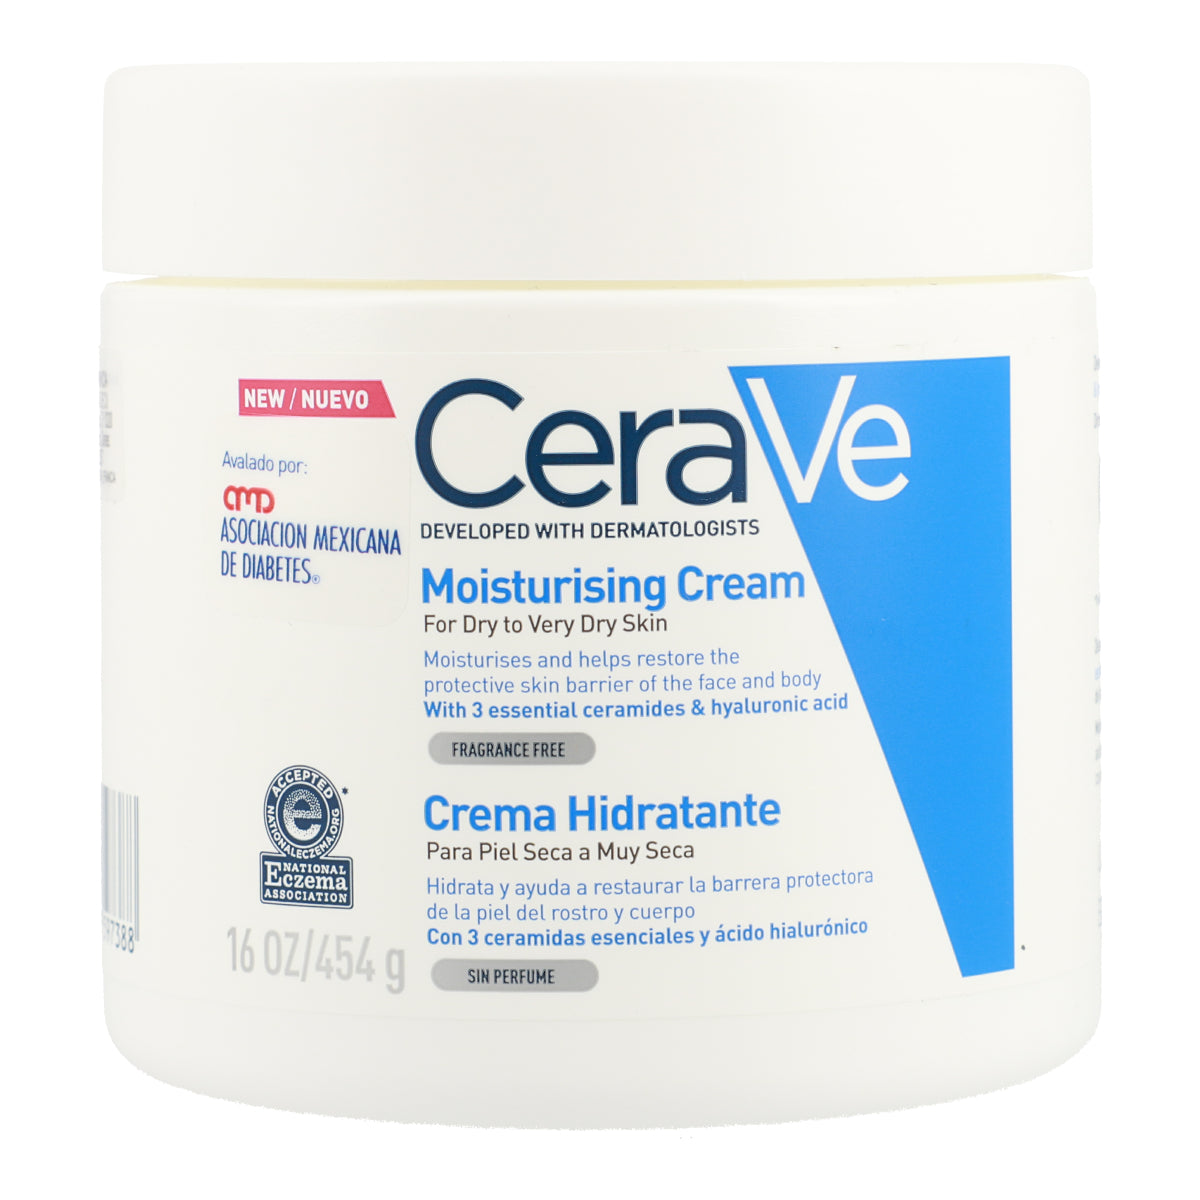 Crema hidratante  / CeraVe 454g